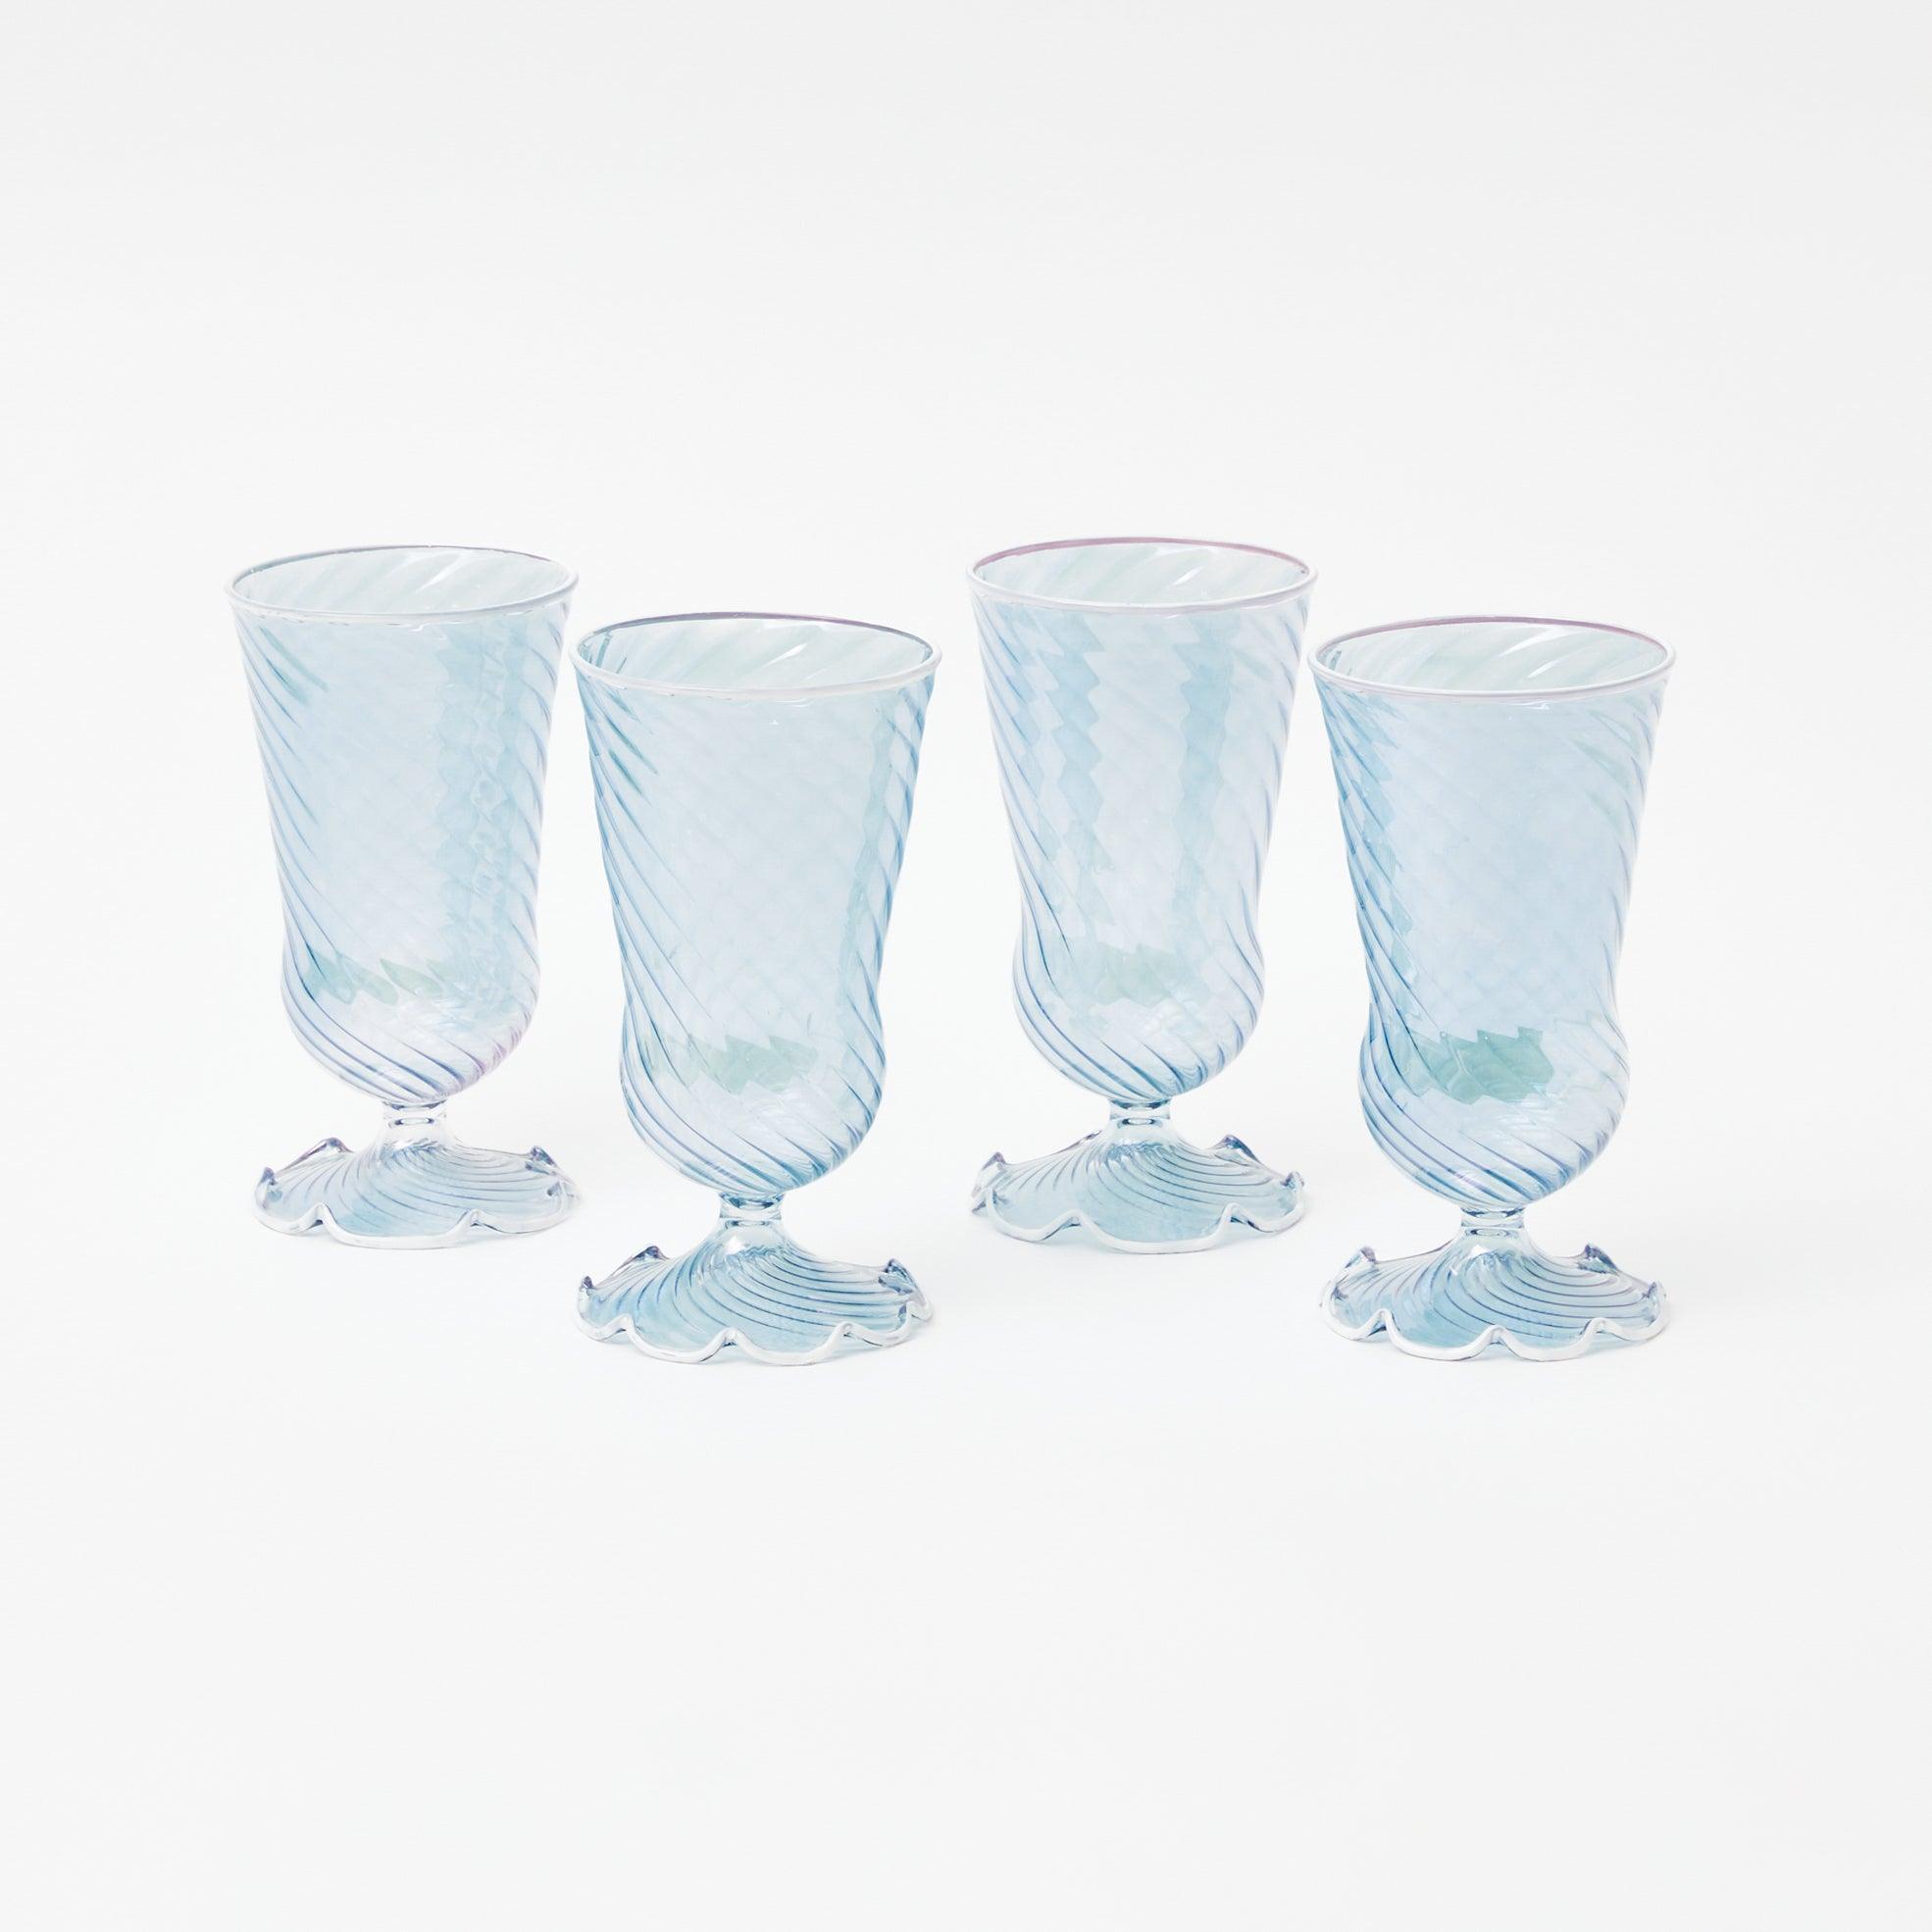 https://www.mrsalice.com/cdn/shop/files/blue-and-white-rim-frilled-glasses-set-of-4-mrs-alice-11.jpg?v=1696172777